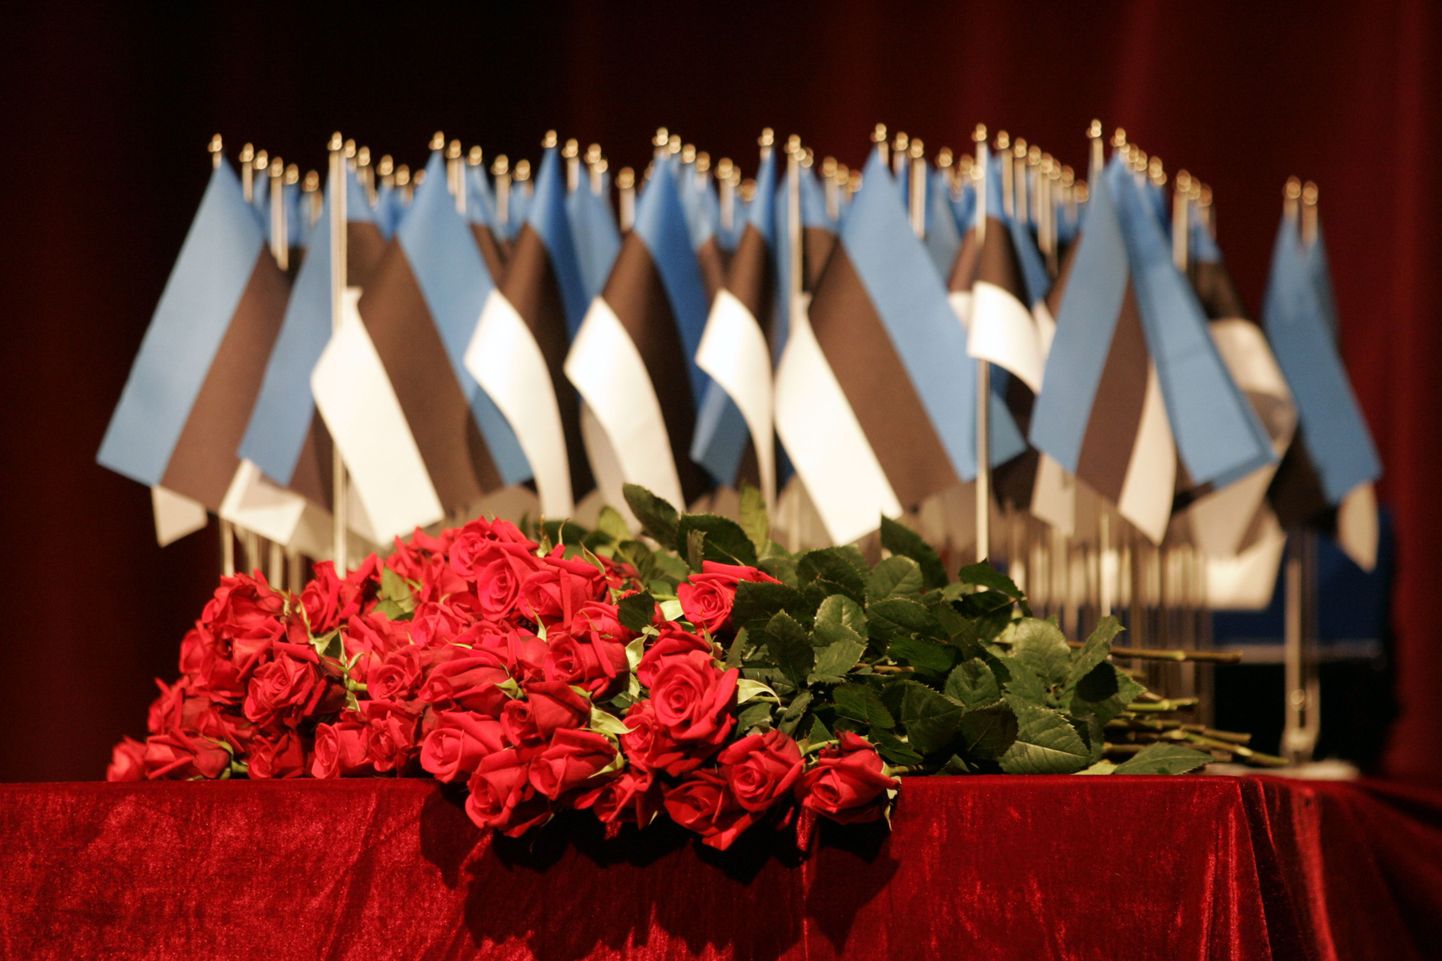 Lilled ja lipud kodakondsustunnistuste pidulik kätteandmisel tänavu märtsis Tallinnas. Tunnistused andsid üle rahvastikuminister Urve Palo ja siseminister Jüri Pihl.